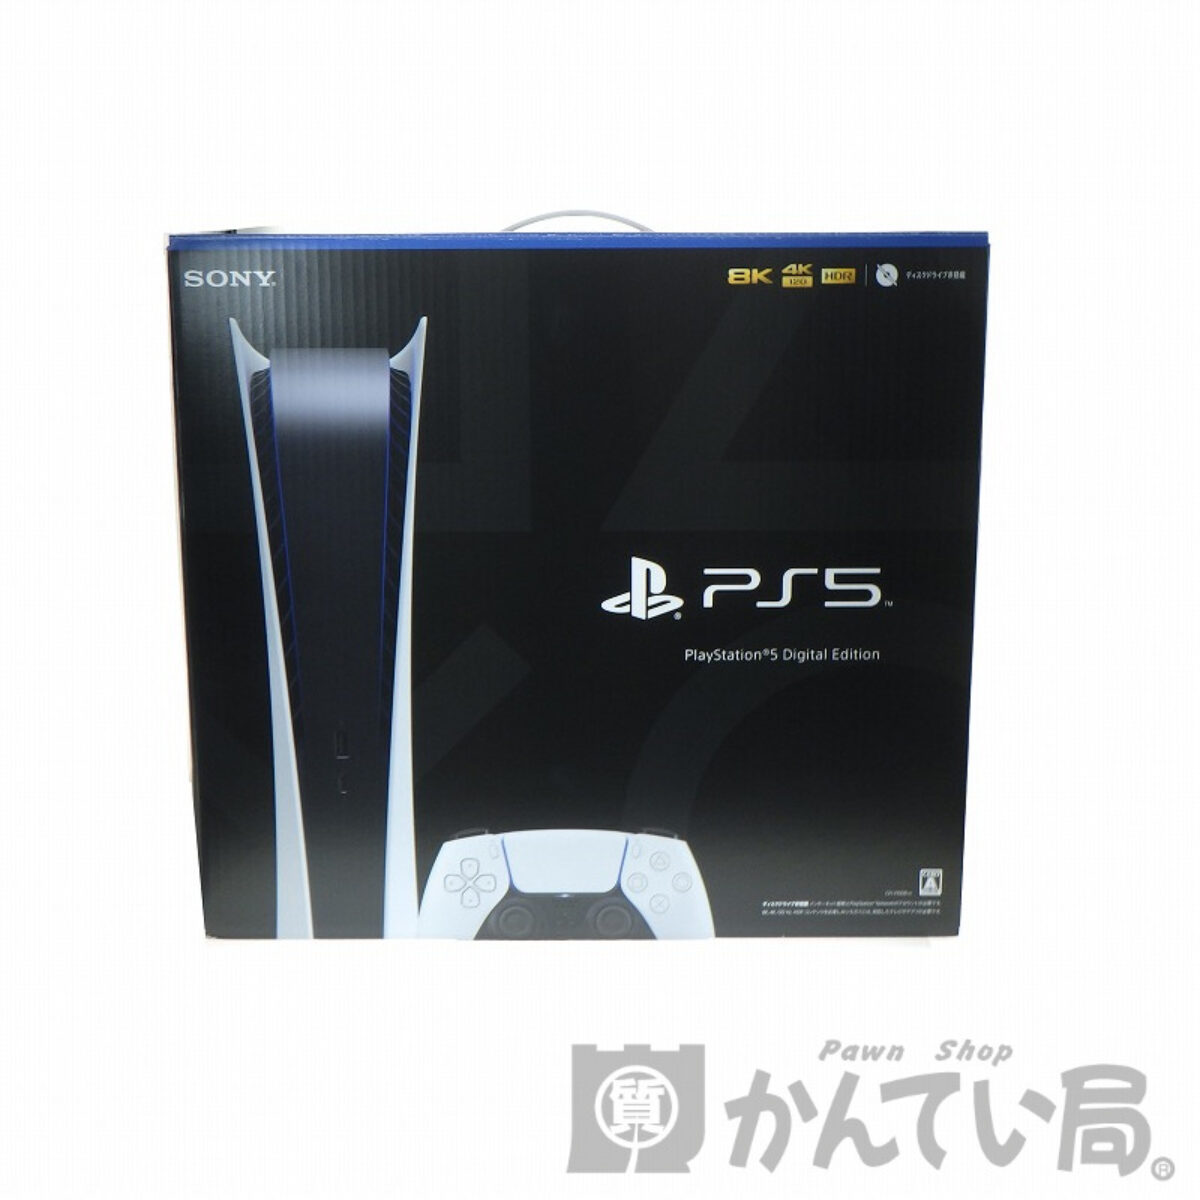 SONY】PlayStation5 デジタルエディション版/CFI-1100B01の買取価格や